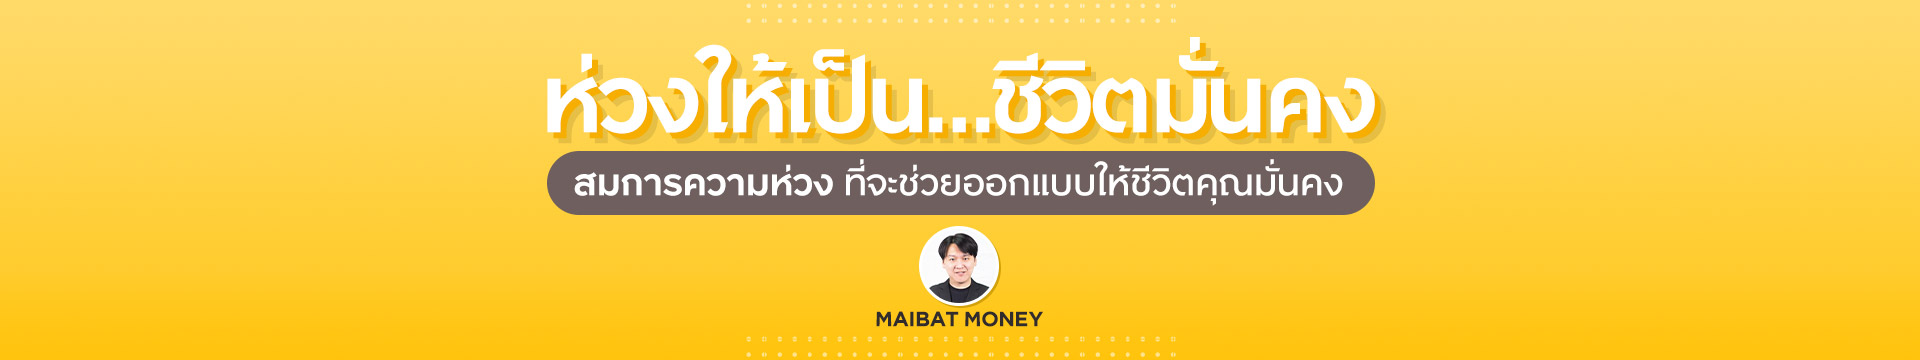 ห่วงให้เป็น…ชีวิตมั่นคง By Maibat money | เรื่องชีวิตคิดให้ง่าย Special Episode